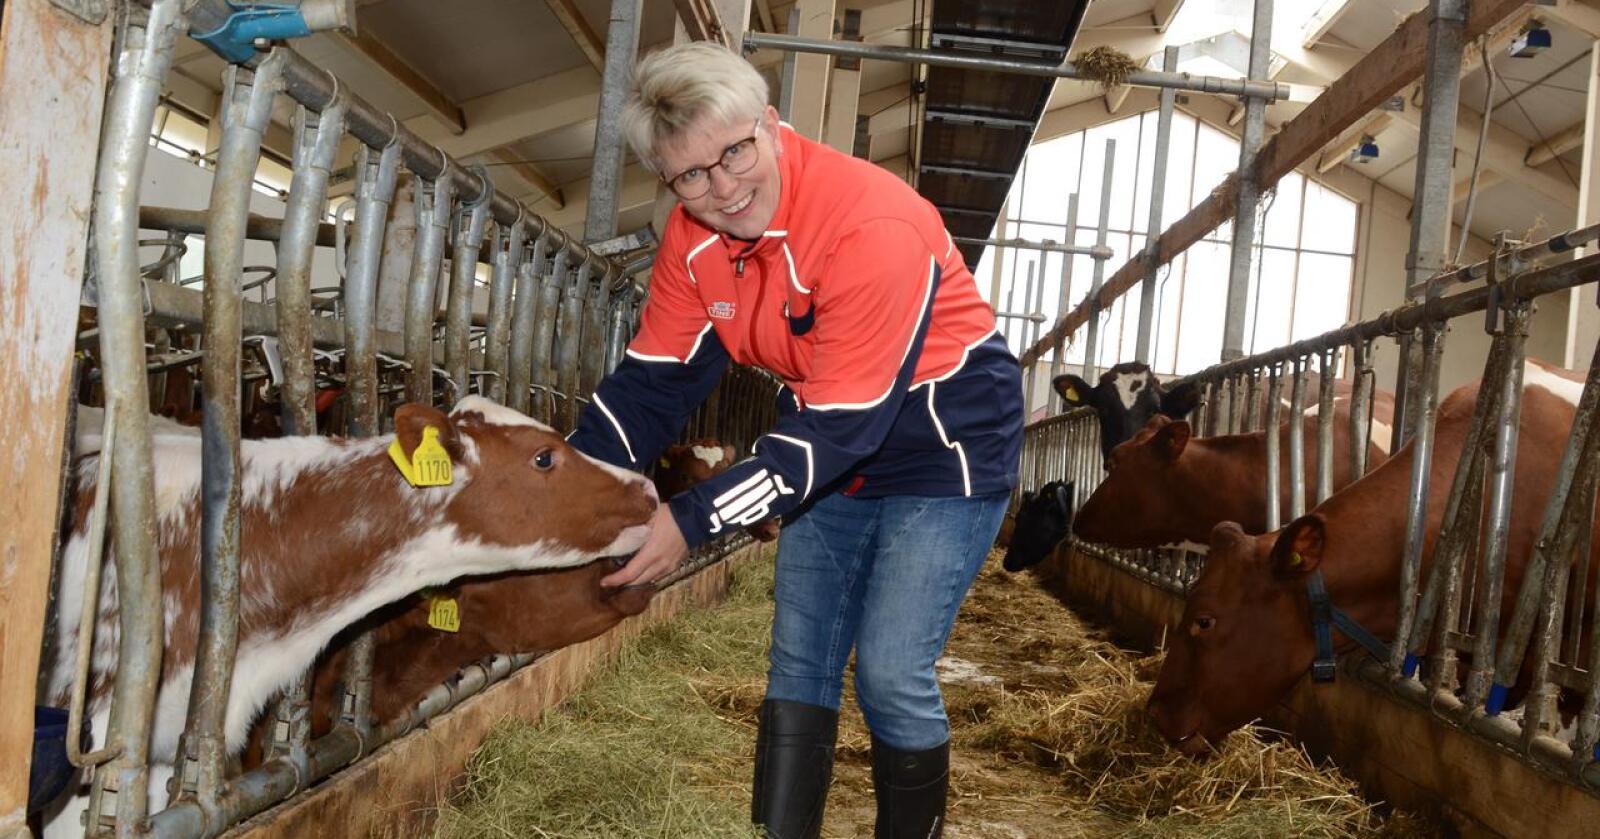 Fornøyd: Løsningen for melkesektoren er balansert og tilfredsstillende – både på import og eksport, mener Tines styreleder Marit Haugen. Her er hun på hjemgården i Steinkjer. (Foto: Linda Sunde)